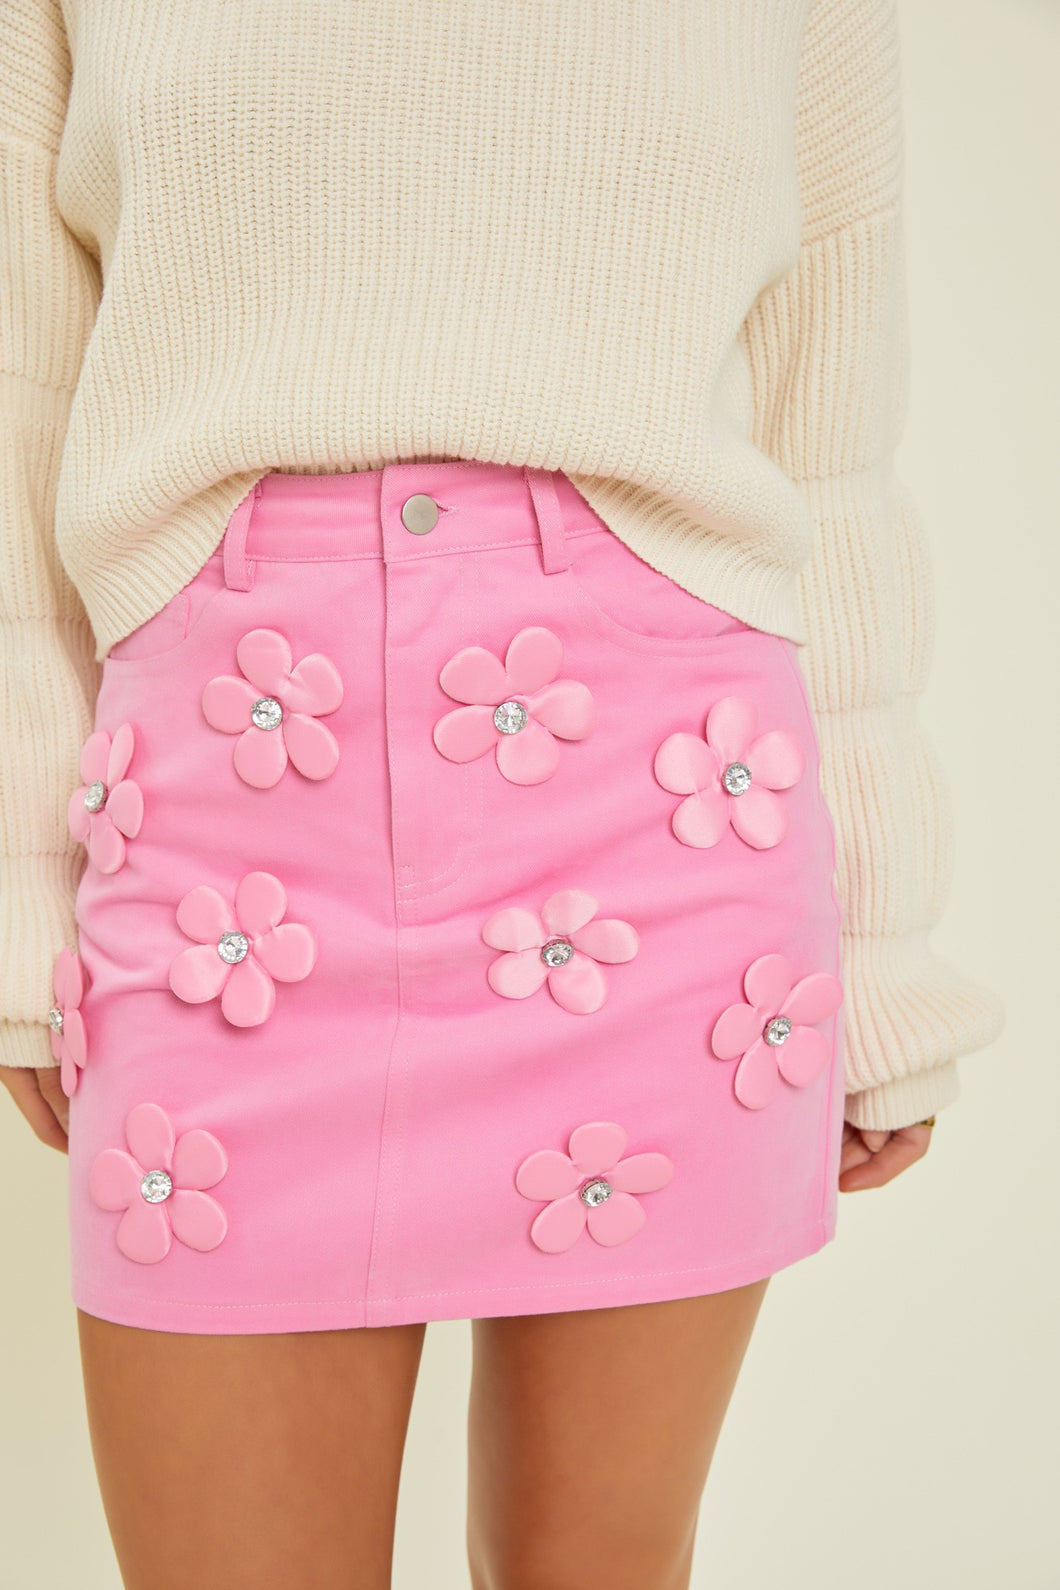 Floral Works Skirt Pink